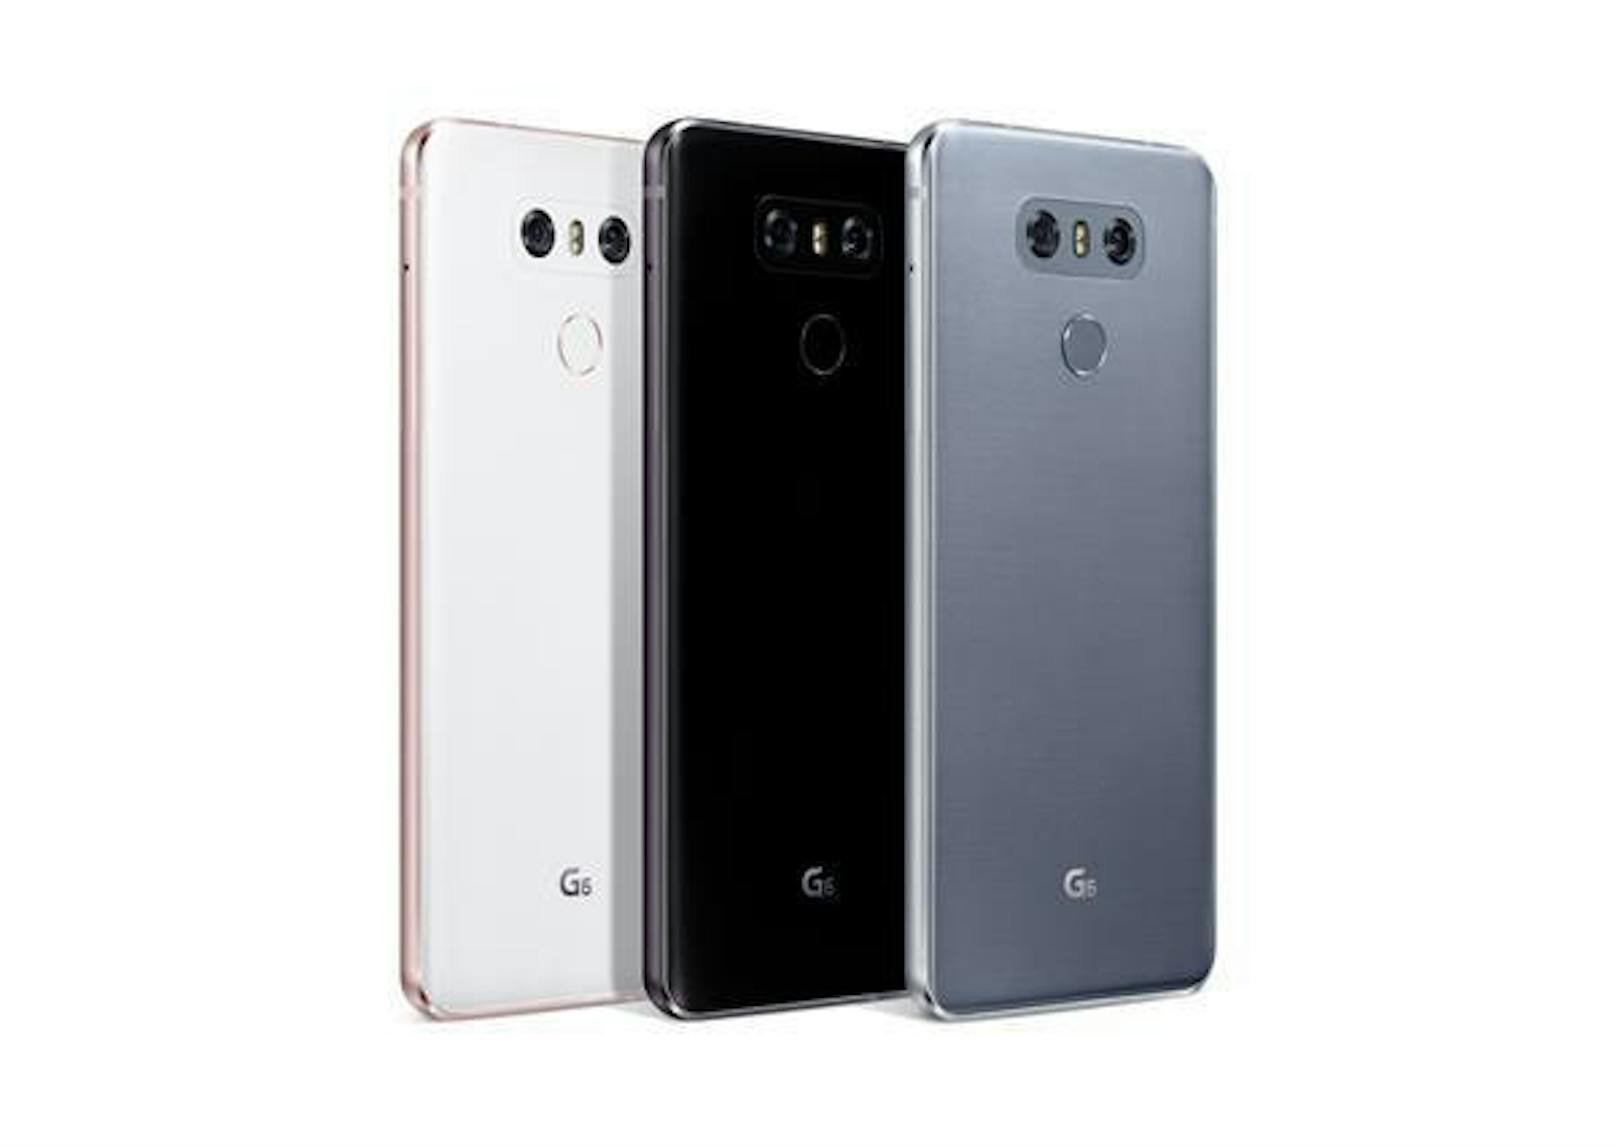 Das LG G6 stellt zwar einen Bruch mit der bisherigen G-Serie dar, zeigt sich aber als toll verbessertes Smartphone. Etwas verwundert, dass LG die überaus starke Kamera nicht intensiver bewirbt, denn die kann sich wirklich sehen lassen.